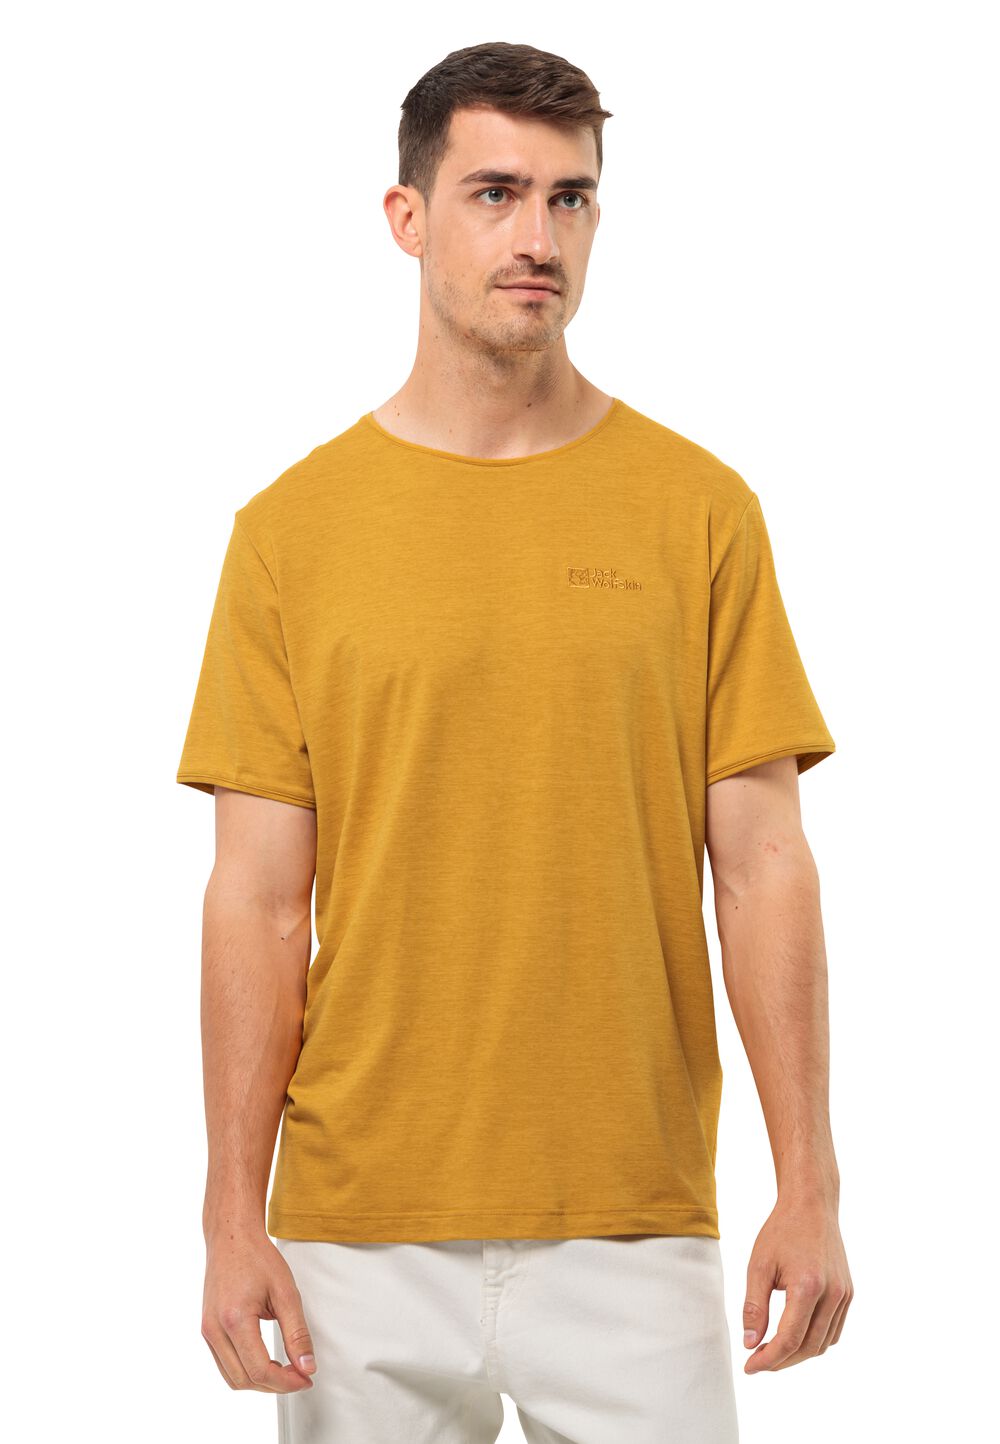 Jack Wolfskin Travel T-Shirt Men Functioneel shirt Heren L bruin curry